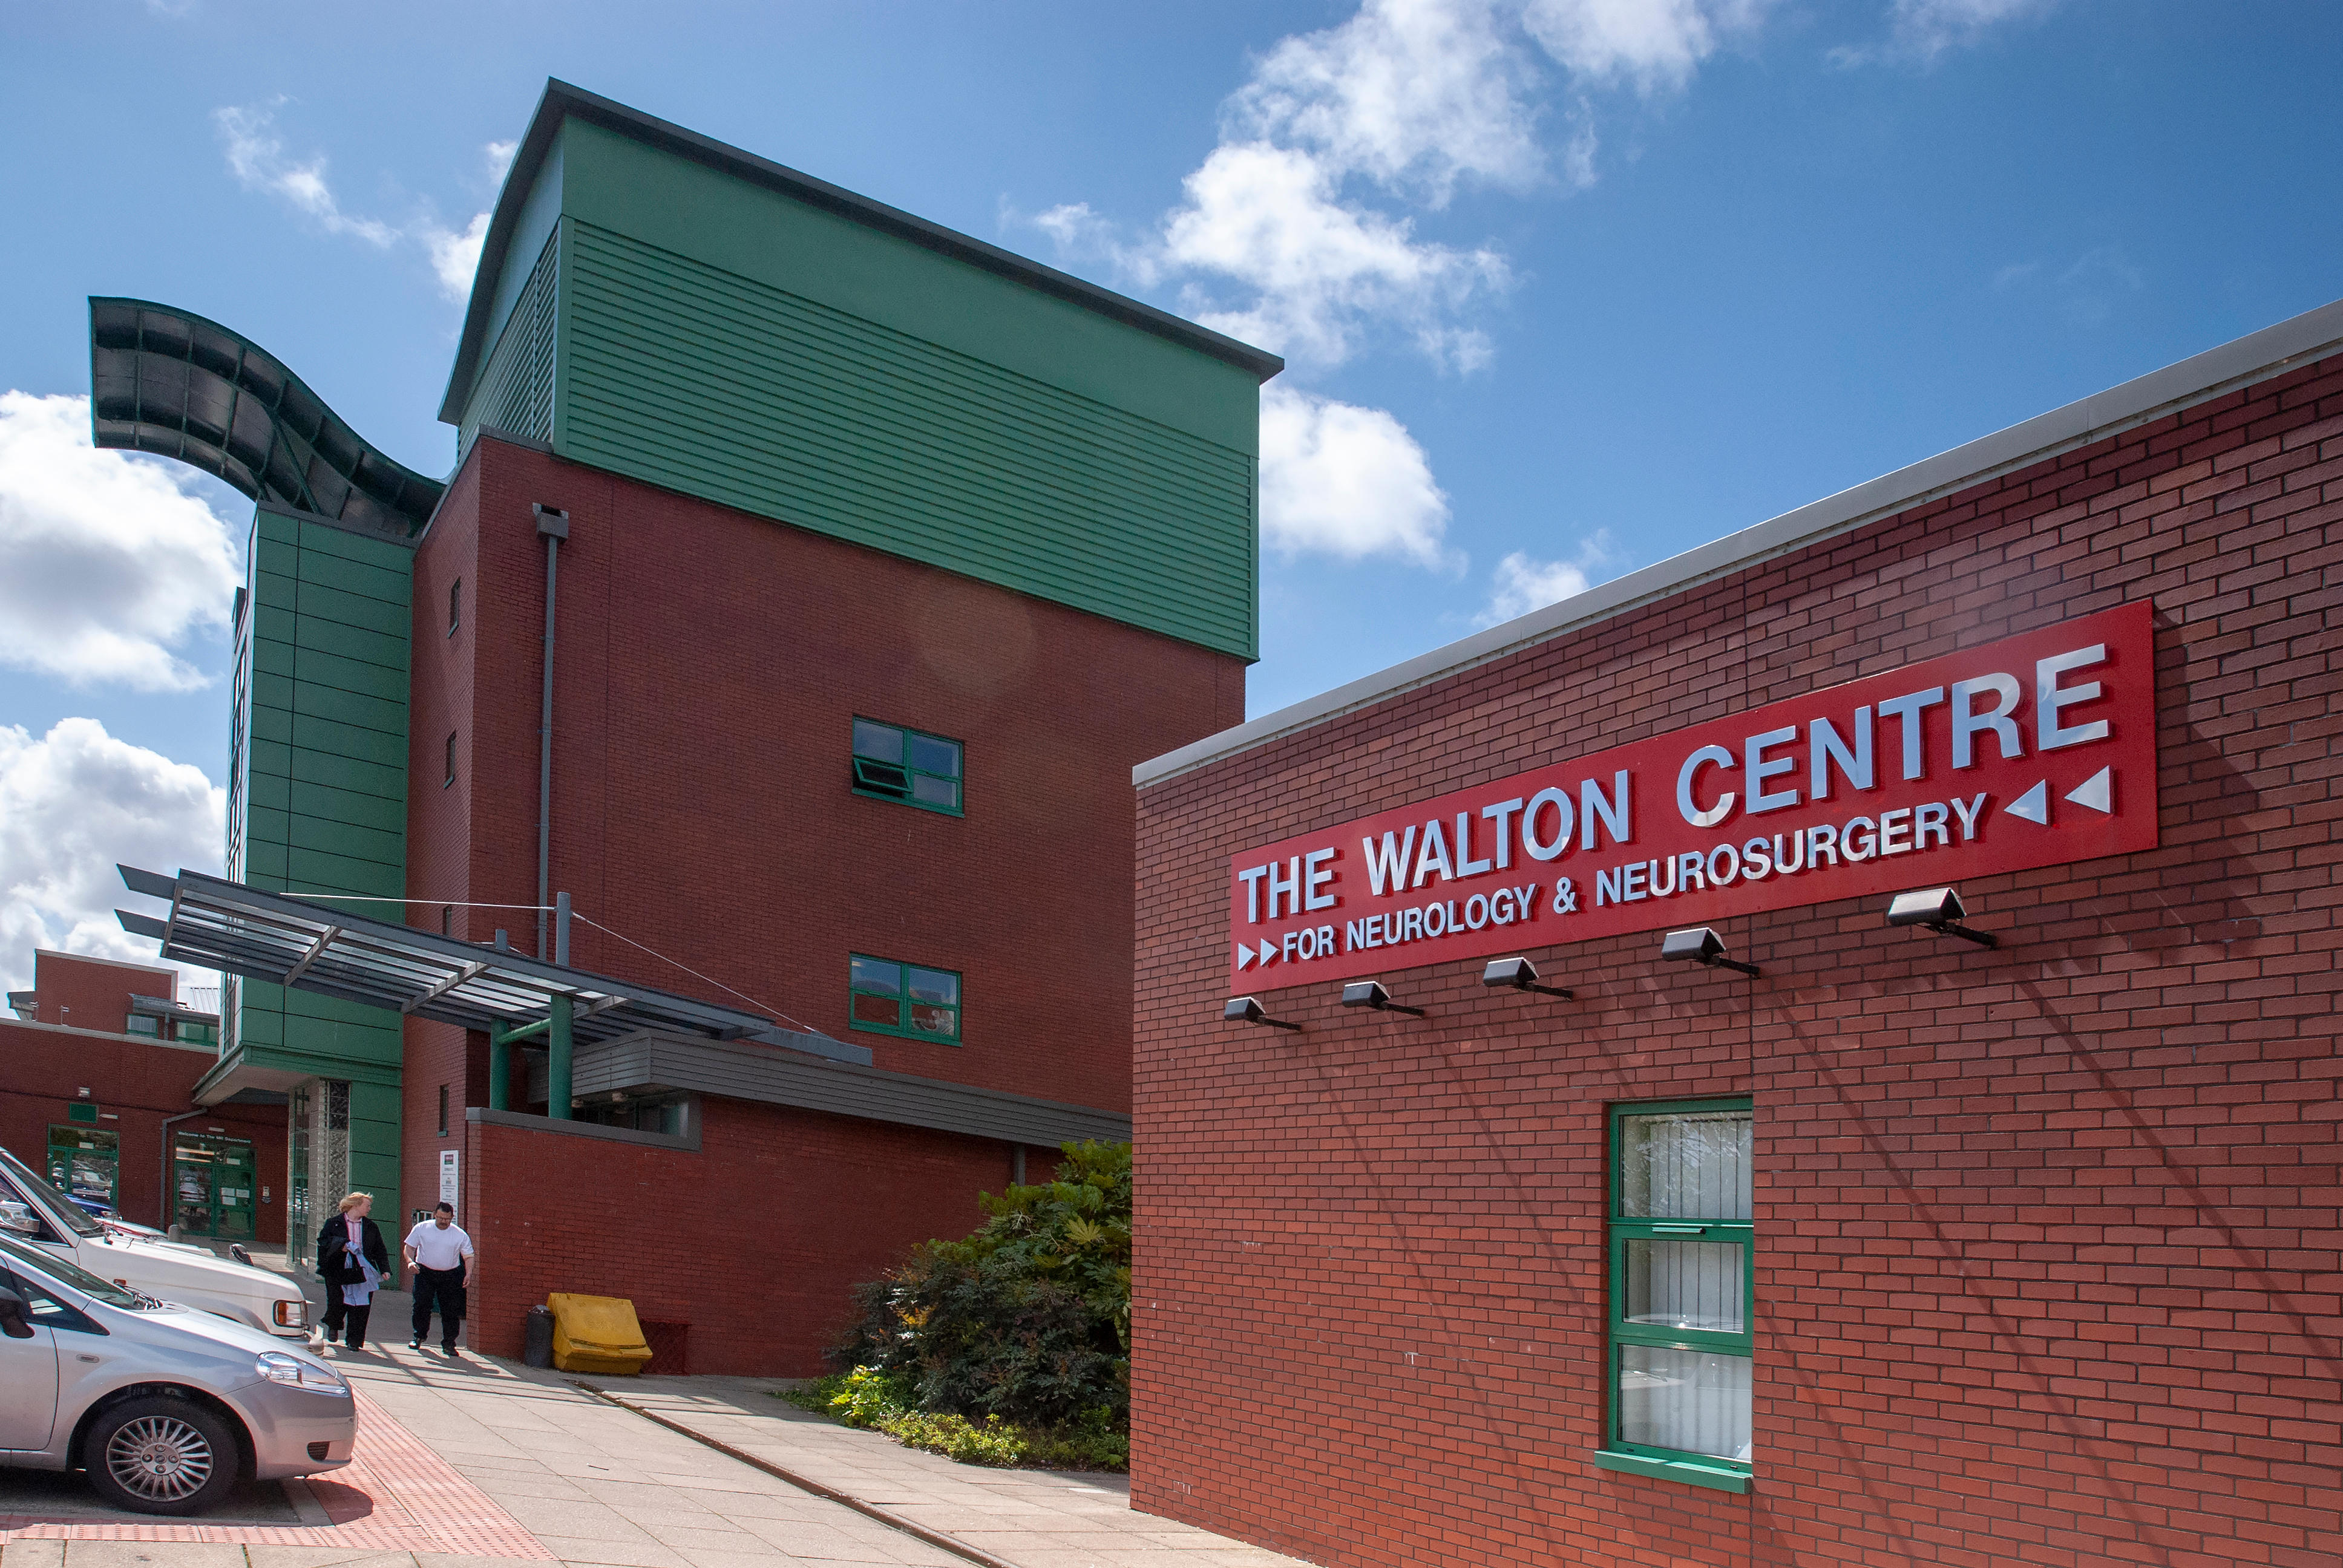 Las cámaras regresan al The Walton Centre de Liverpool